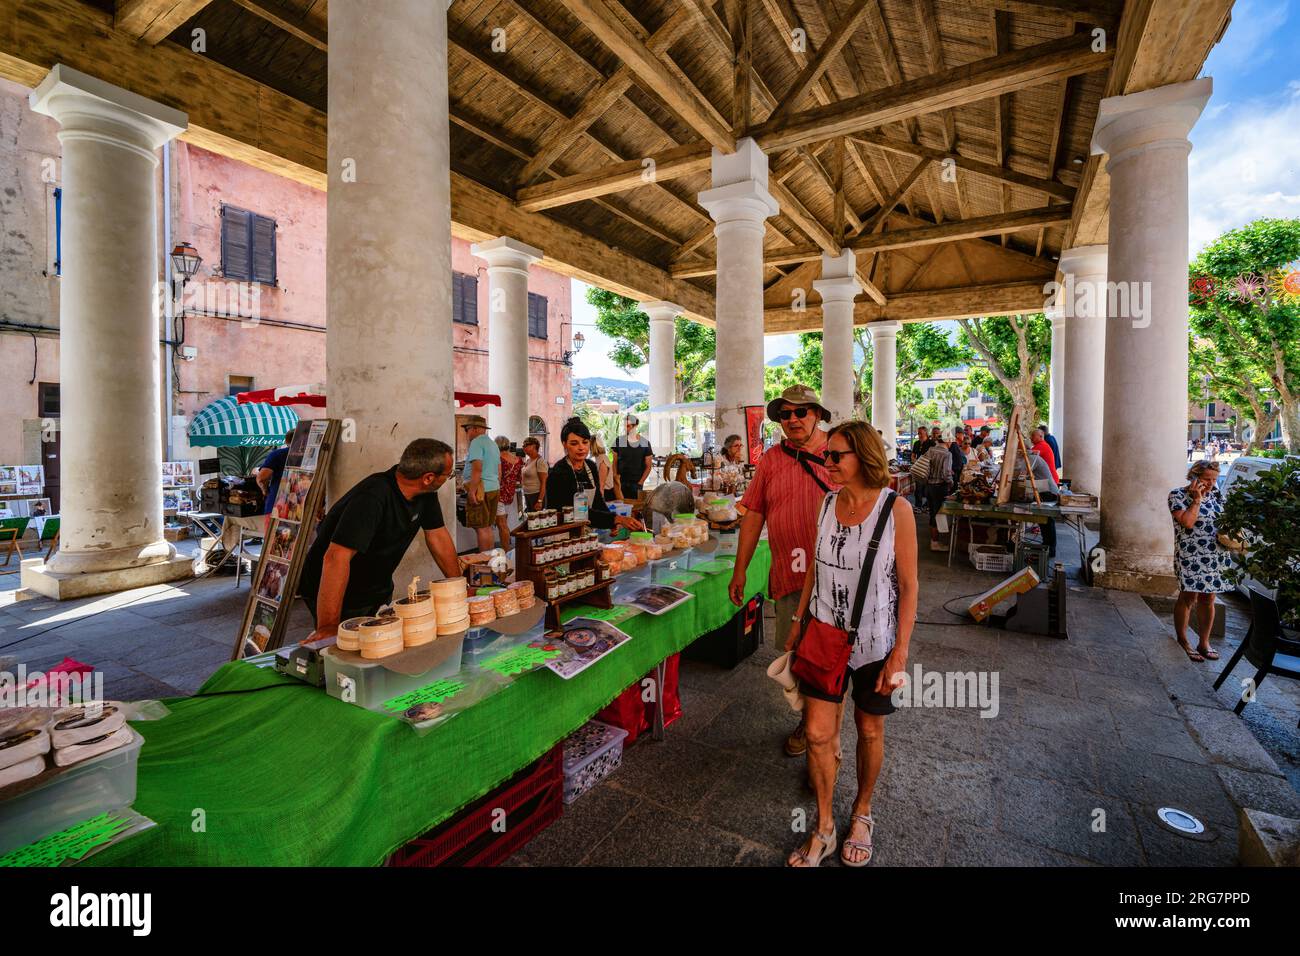 Sur une place de marché à l'Île-Rousse, Corse, France Banque D'Images